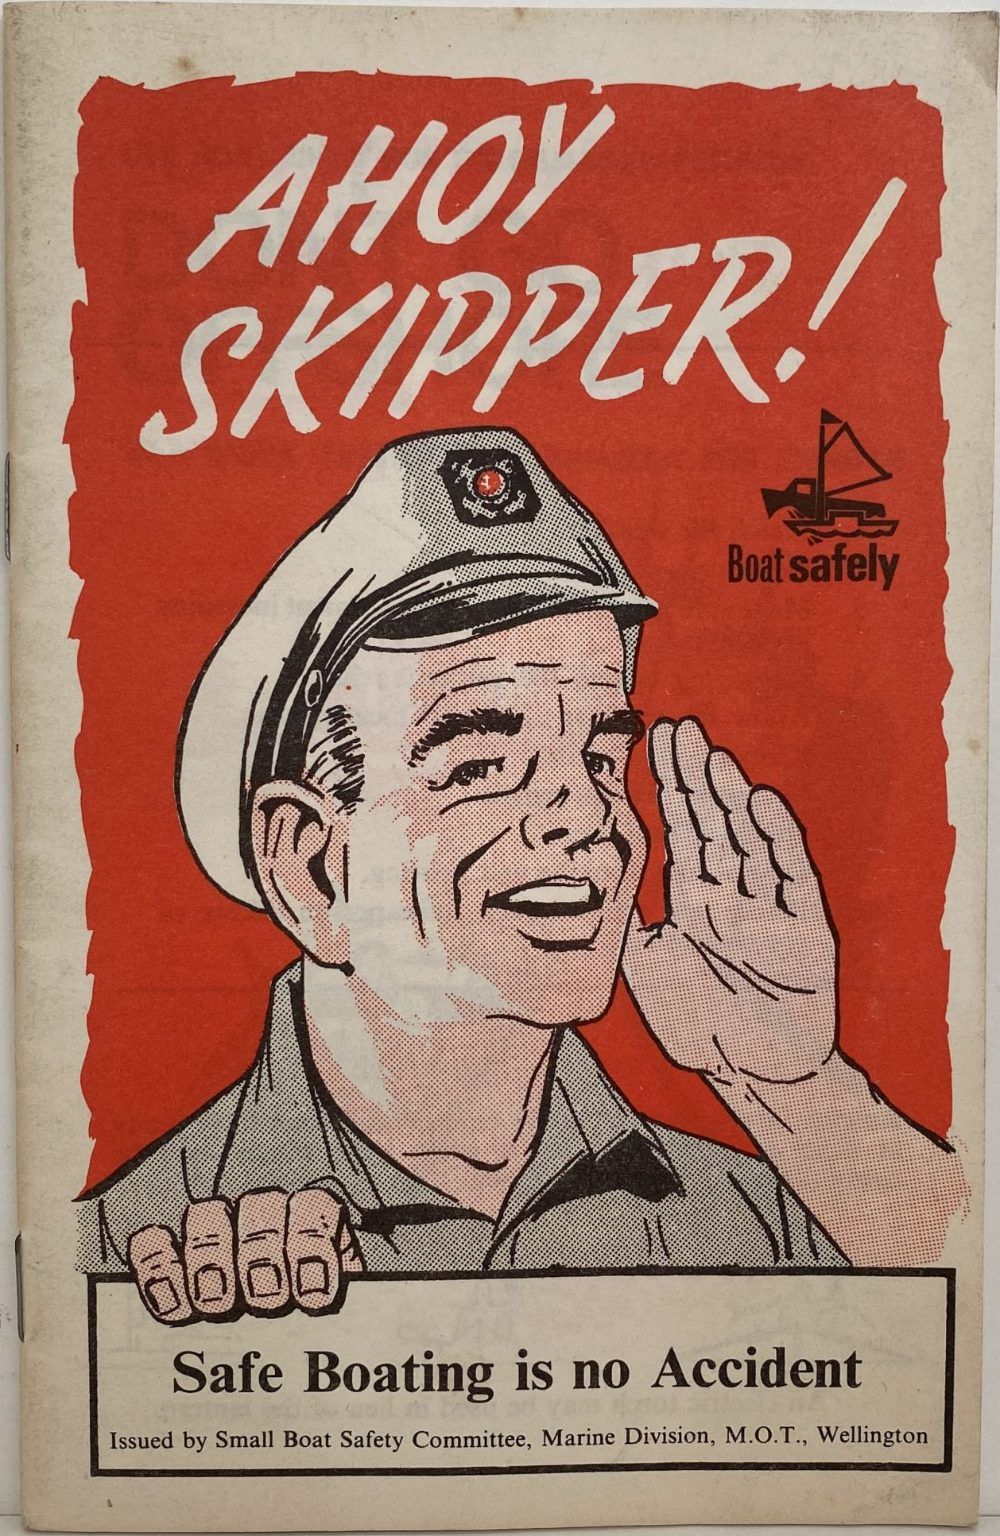 AHOY SKIPPER! Safe Boating Manual